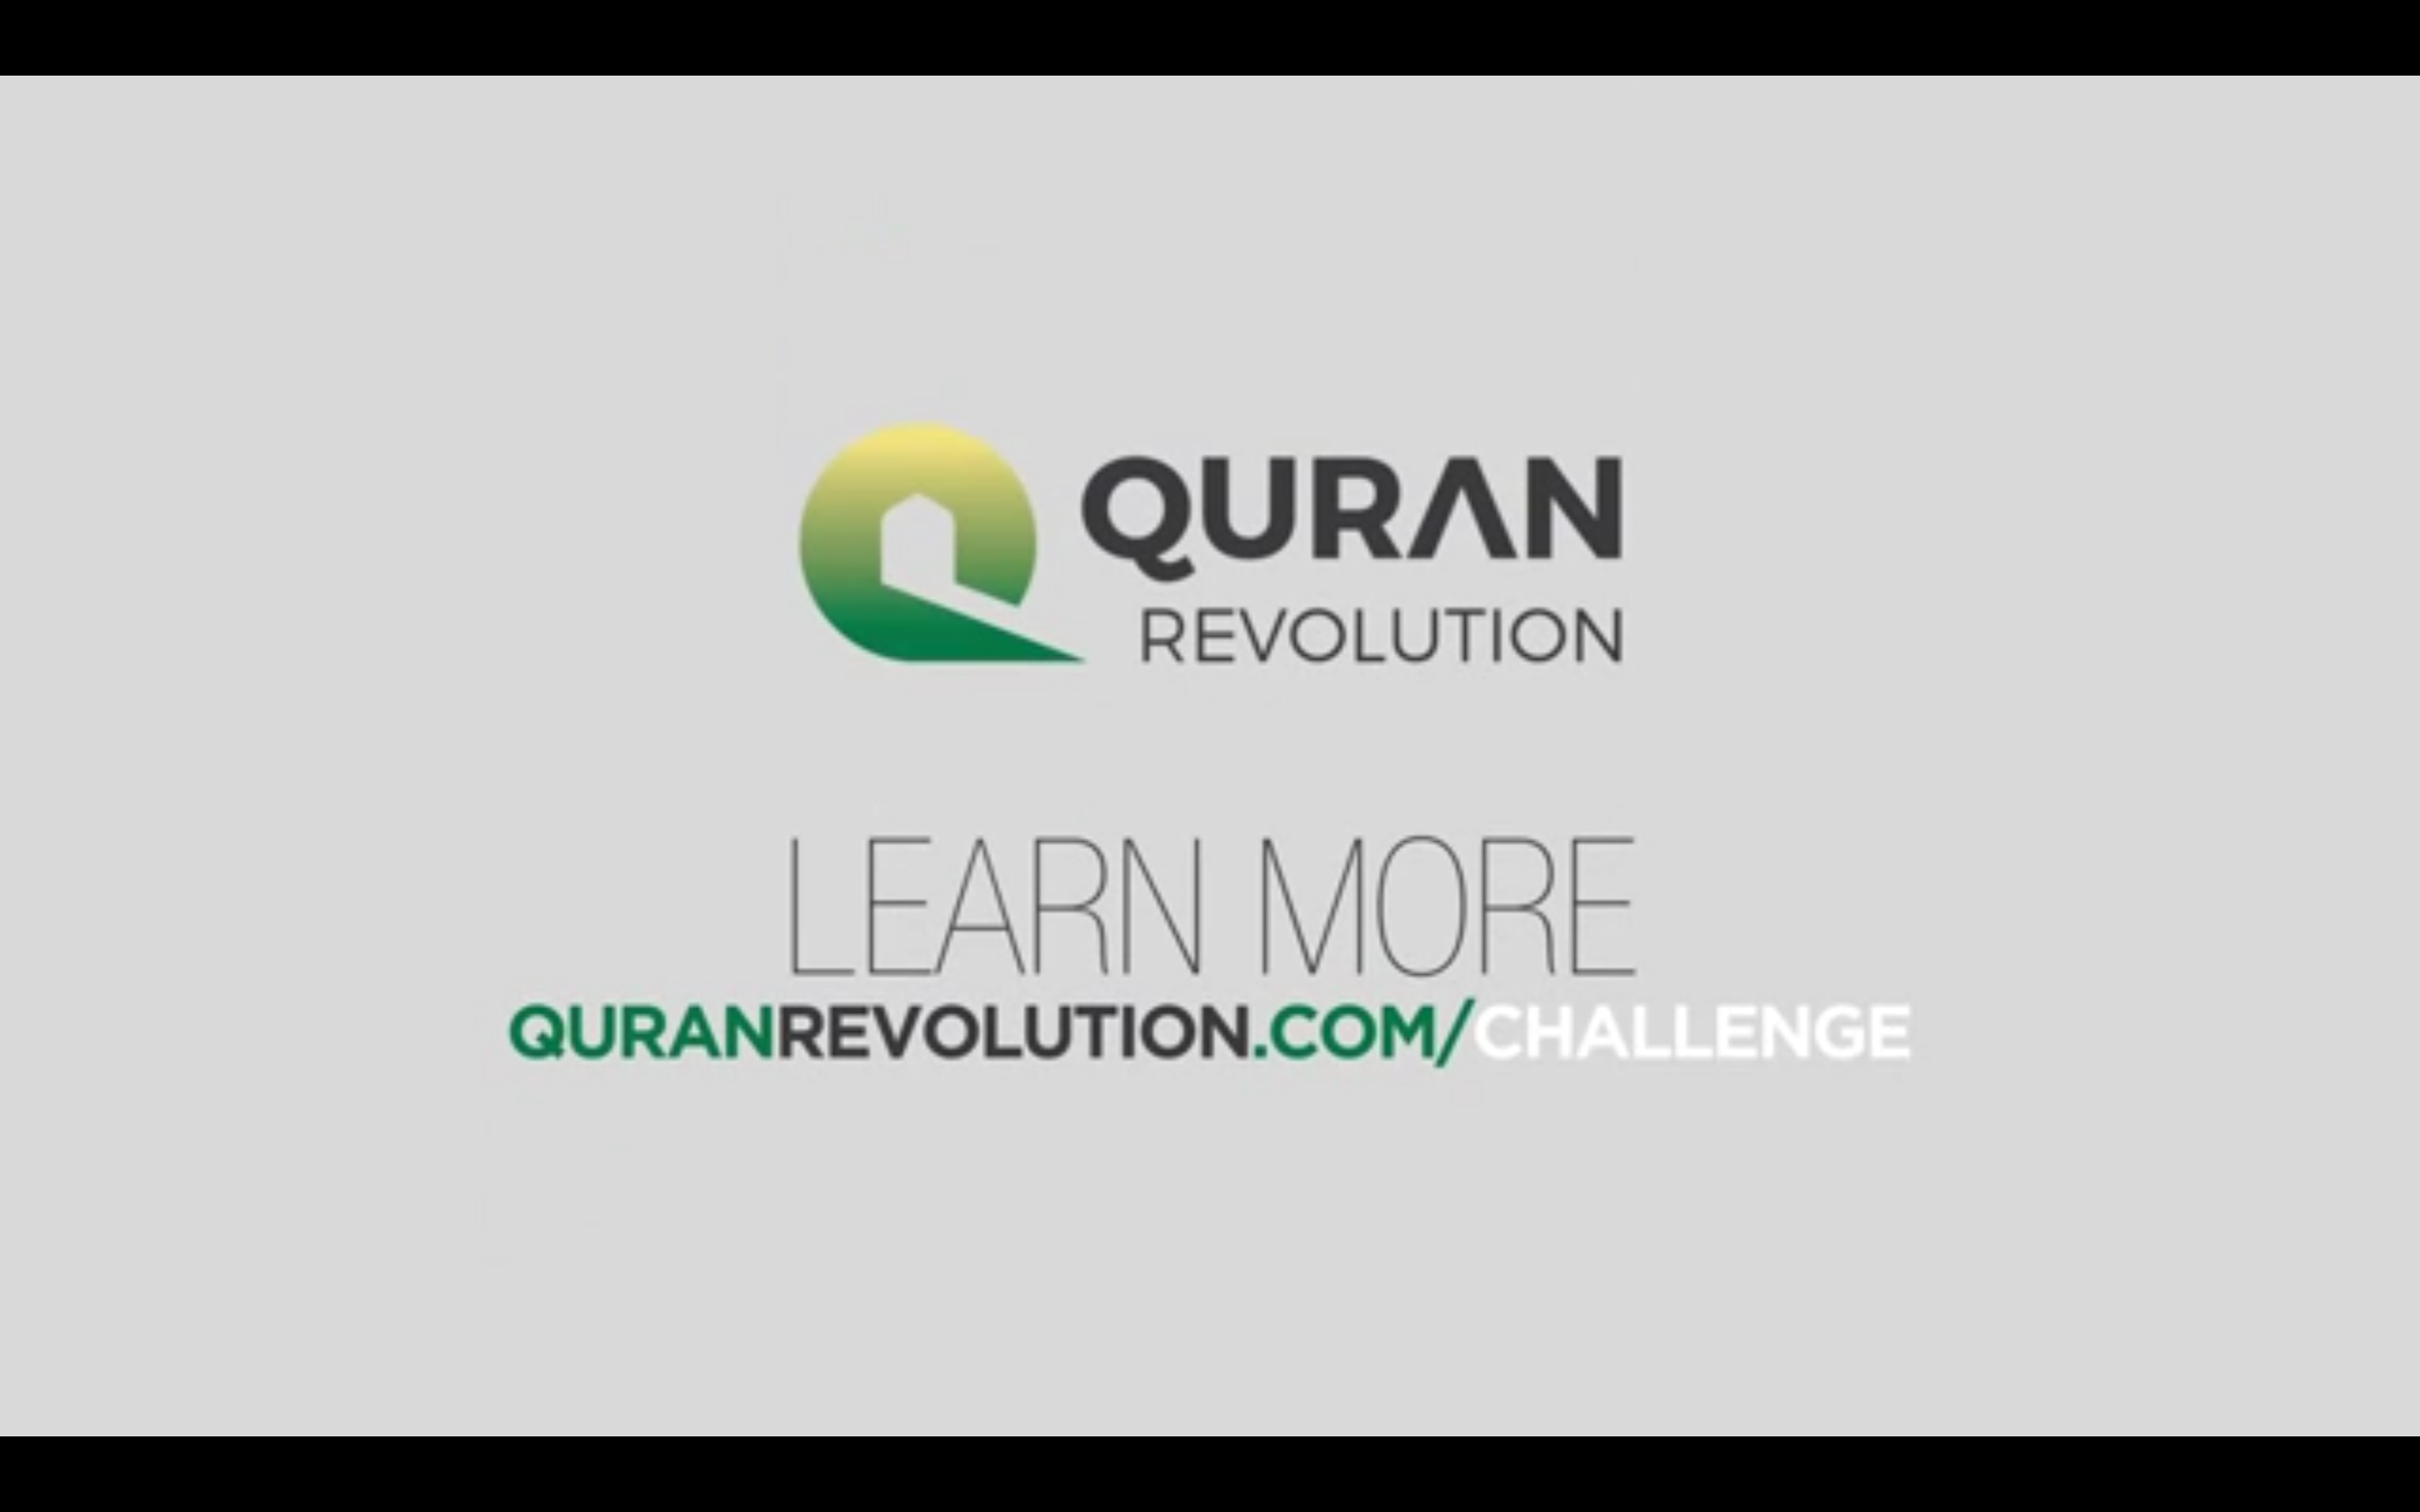 La sourate Qureysh sur la chaîne Quran Revolution